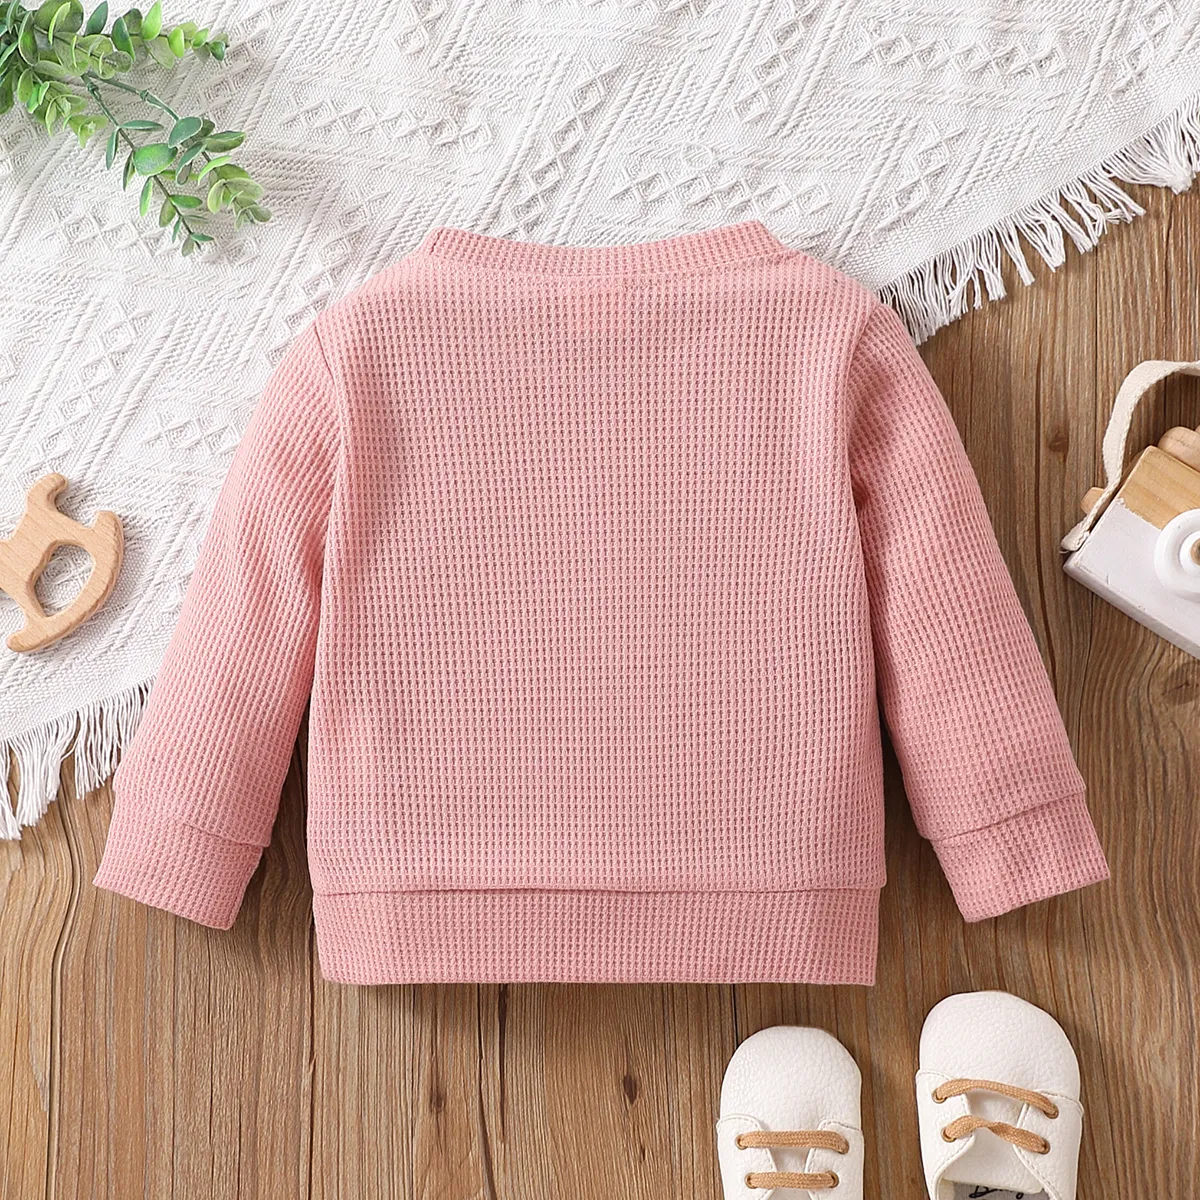 Baby Boy/Girl Letter/Rainbow Design Long-sleeve Sweatshirts Pink big image 1